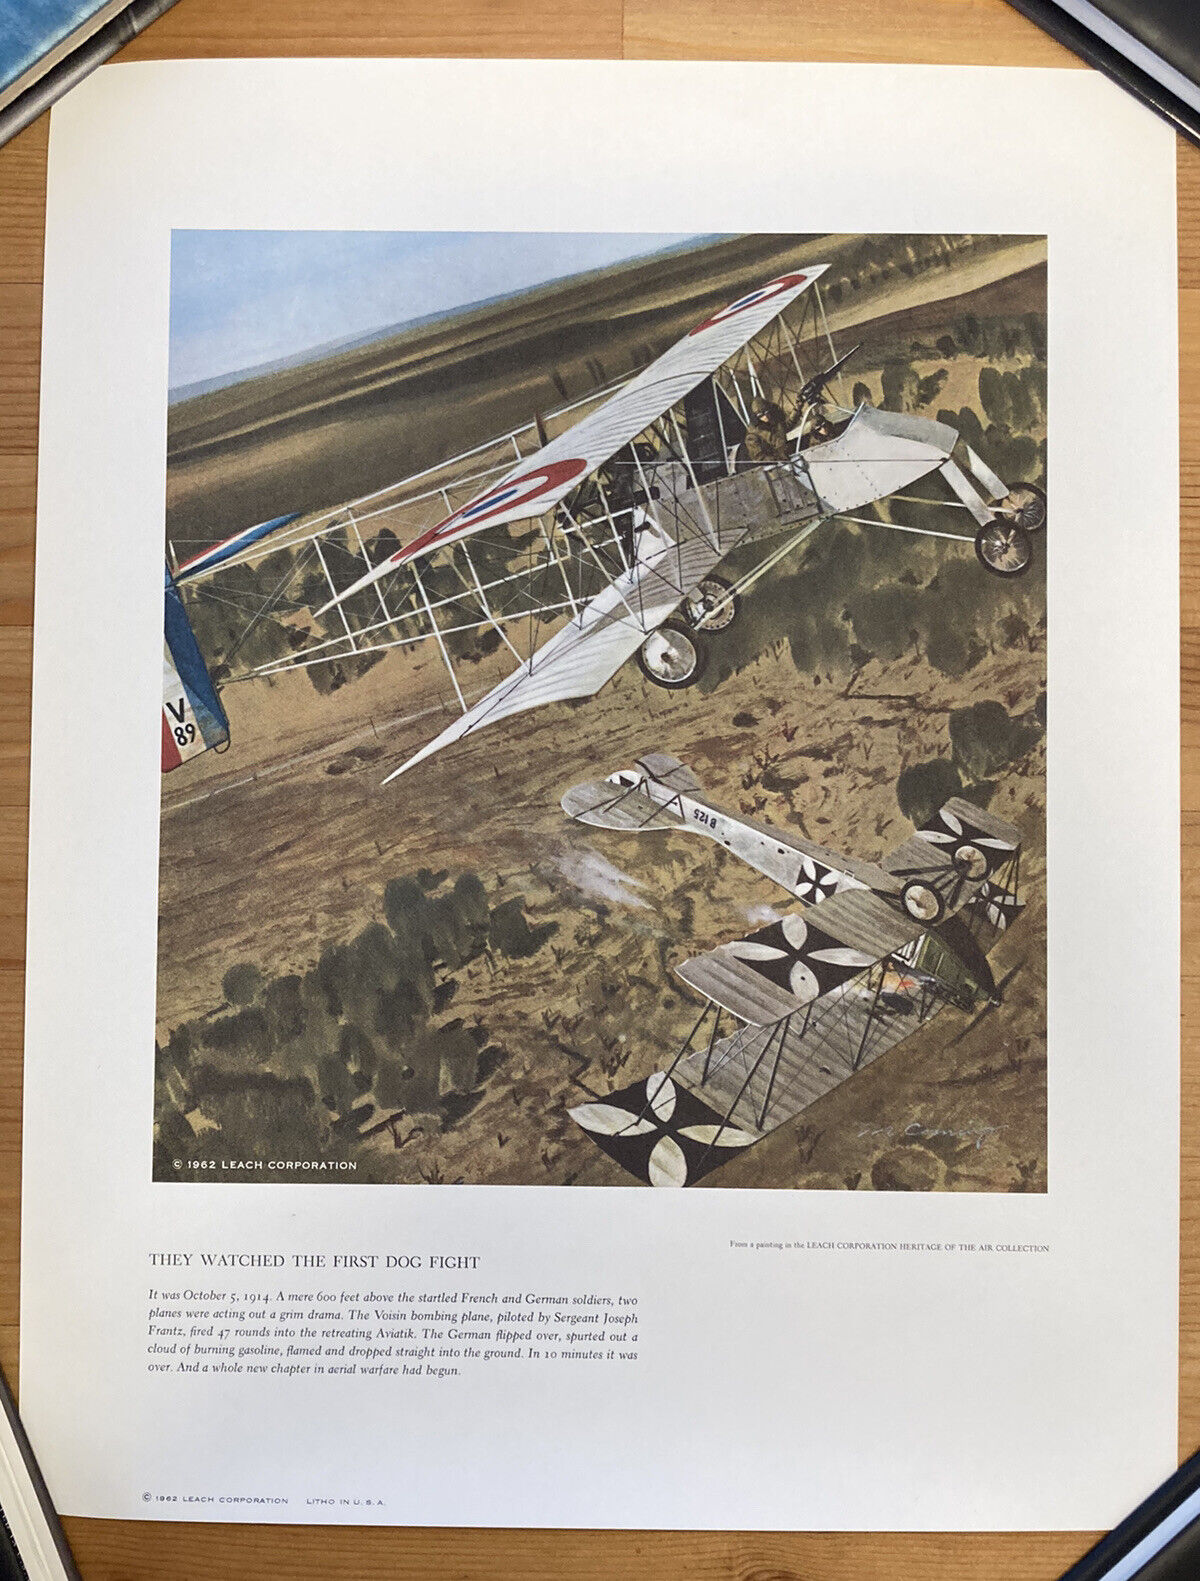 Vtg 1962 VOISIN BOMBER Military Airplane Dog Fight MERV CORNING Litho Print 60s